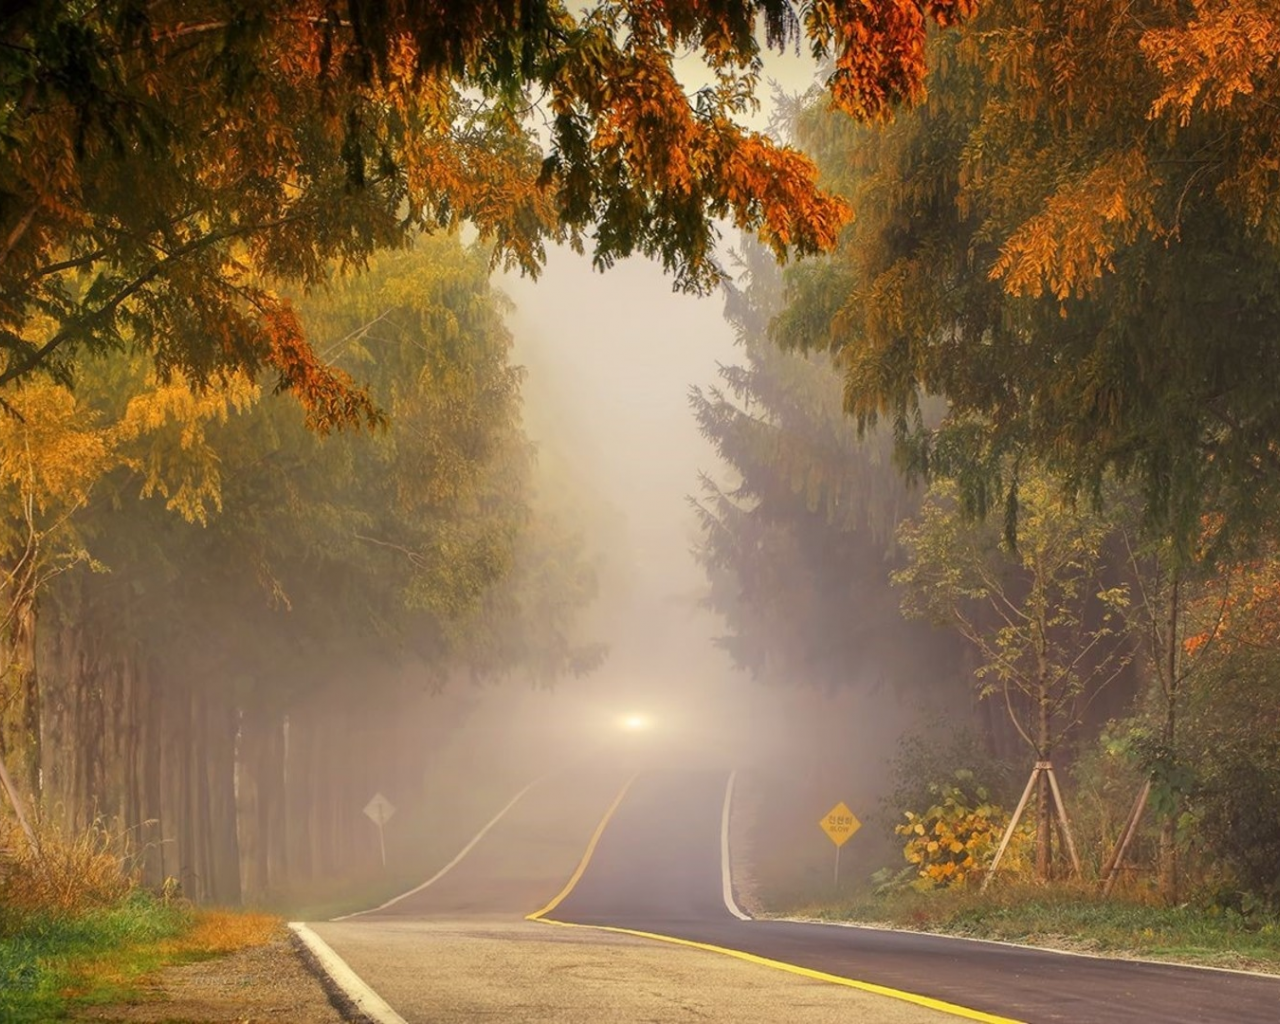 дорога, лес, туман